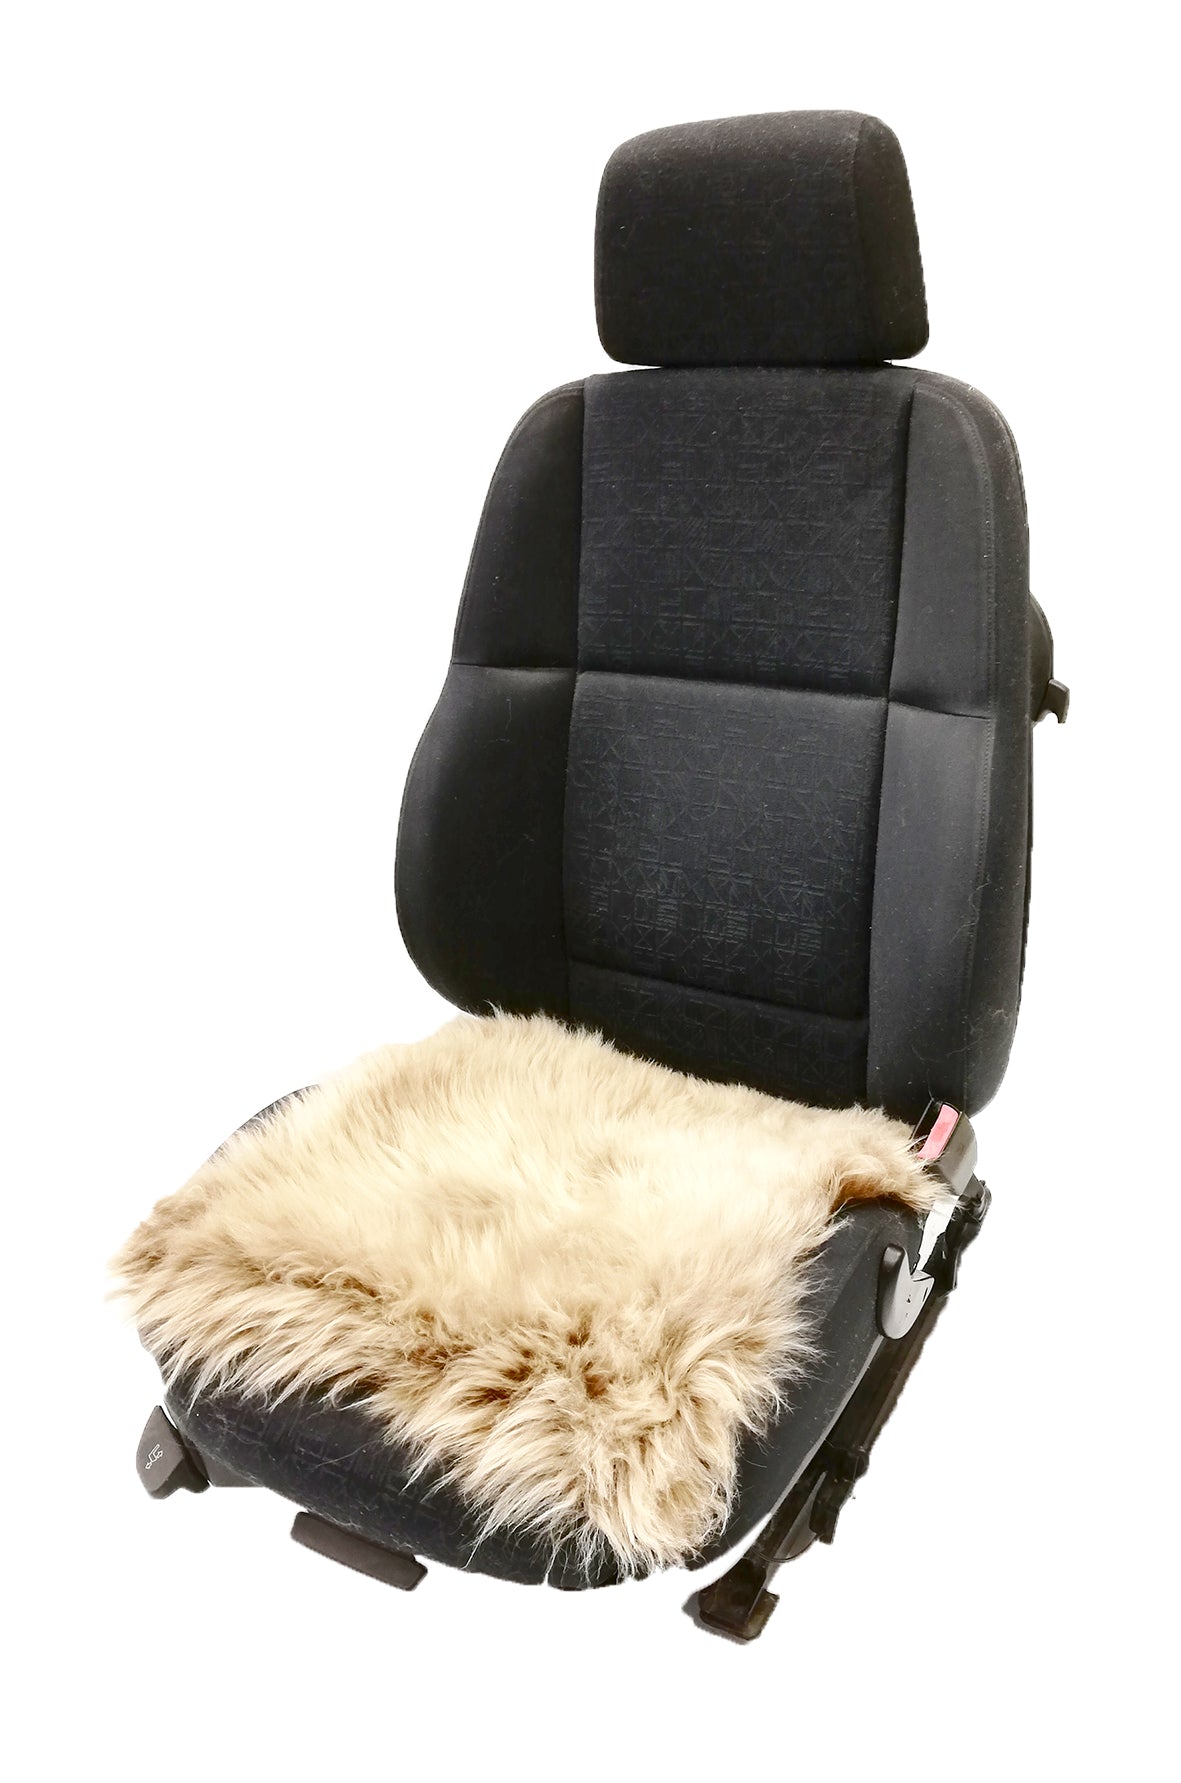 Lammfell-Kissen - Sitzkissen - quadratisch - 40 cm - cappuccino, Lammfelle  für Auto, Bett und Wohnzimmer in höchster Qualität